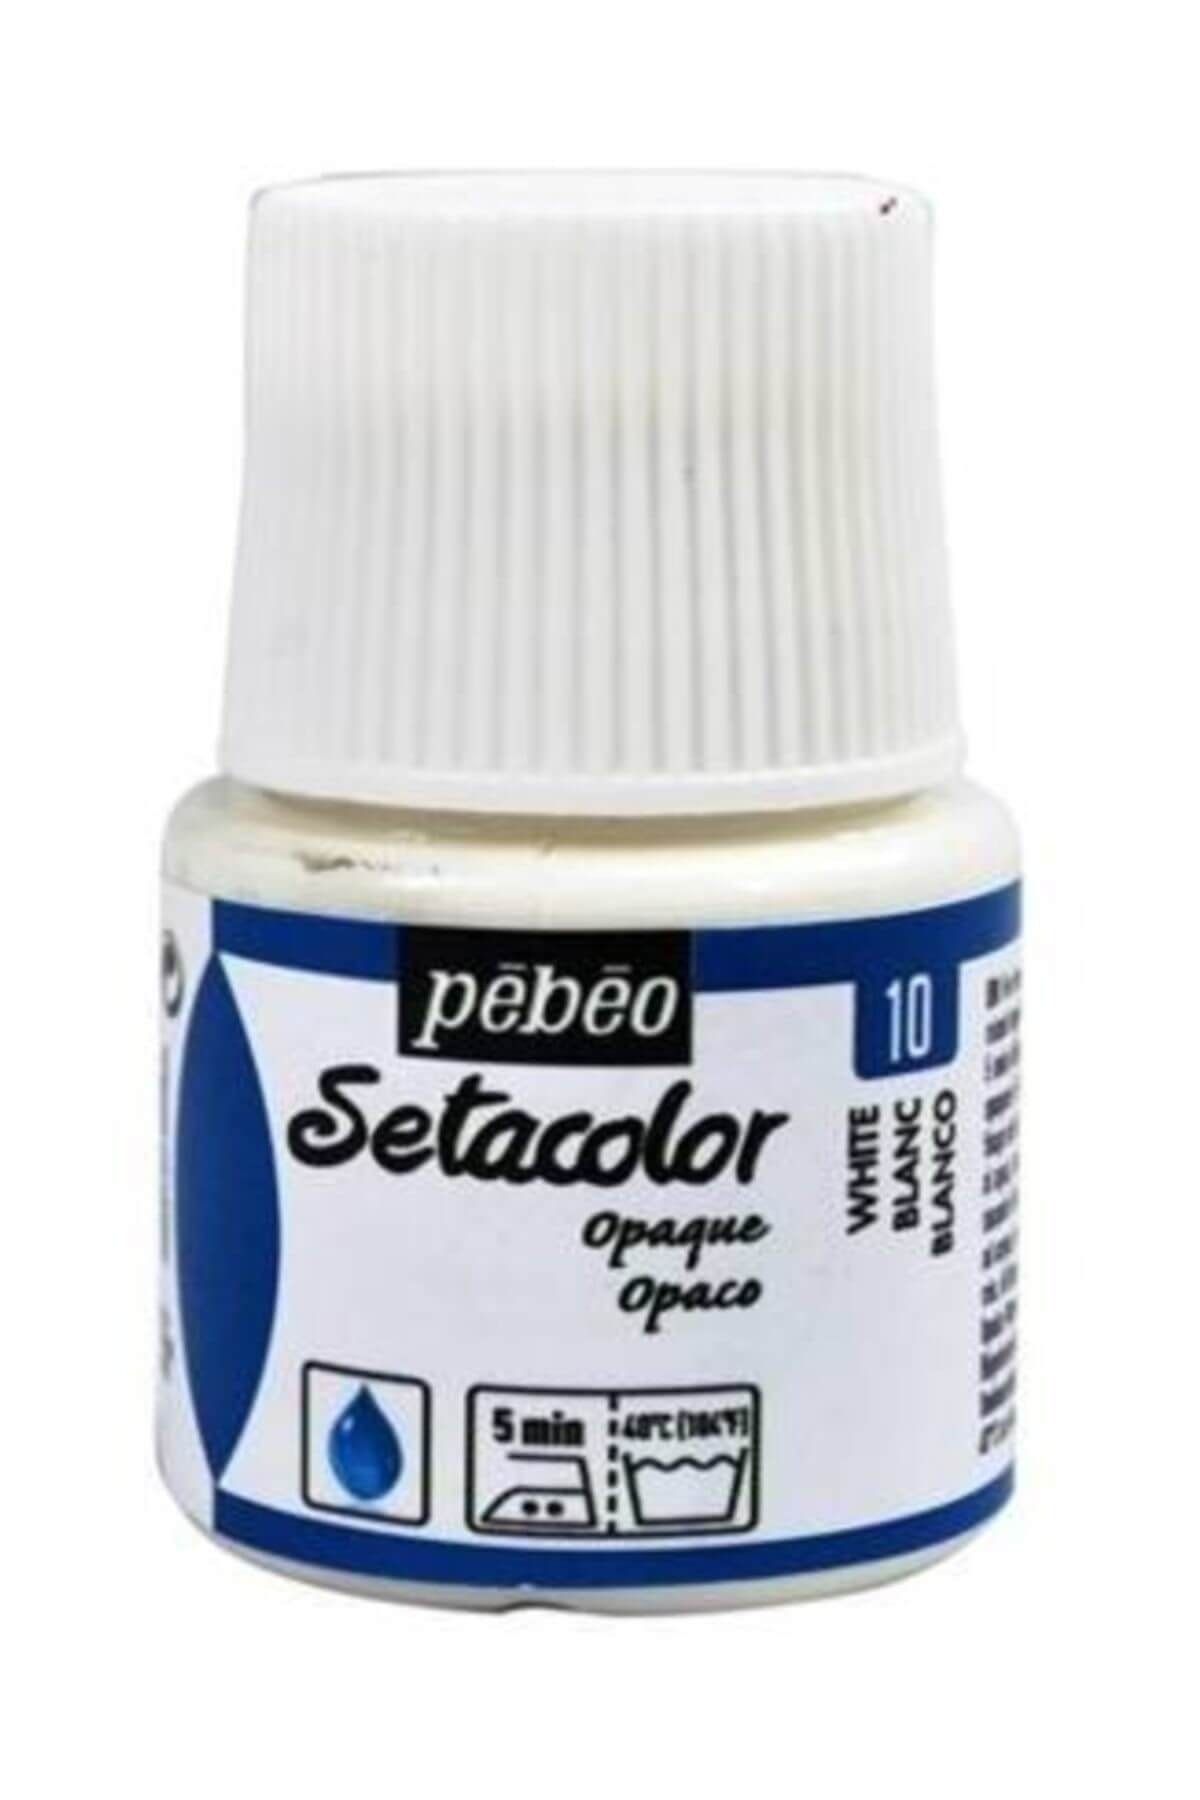 Pebeo 295/10 Setacolor Opaque Örtücü Kumaş Boyası